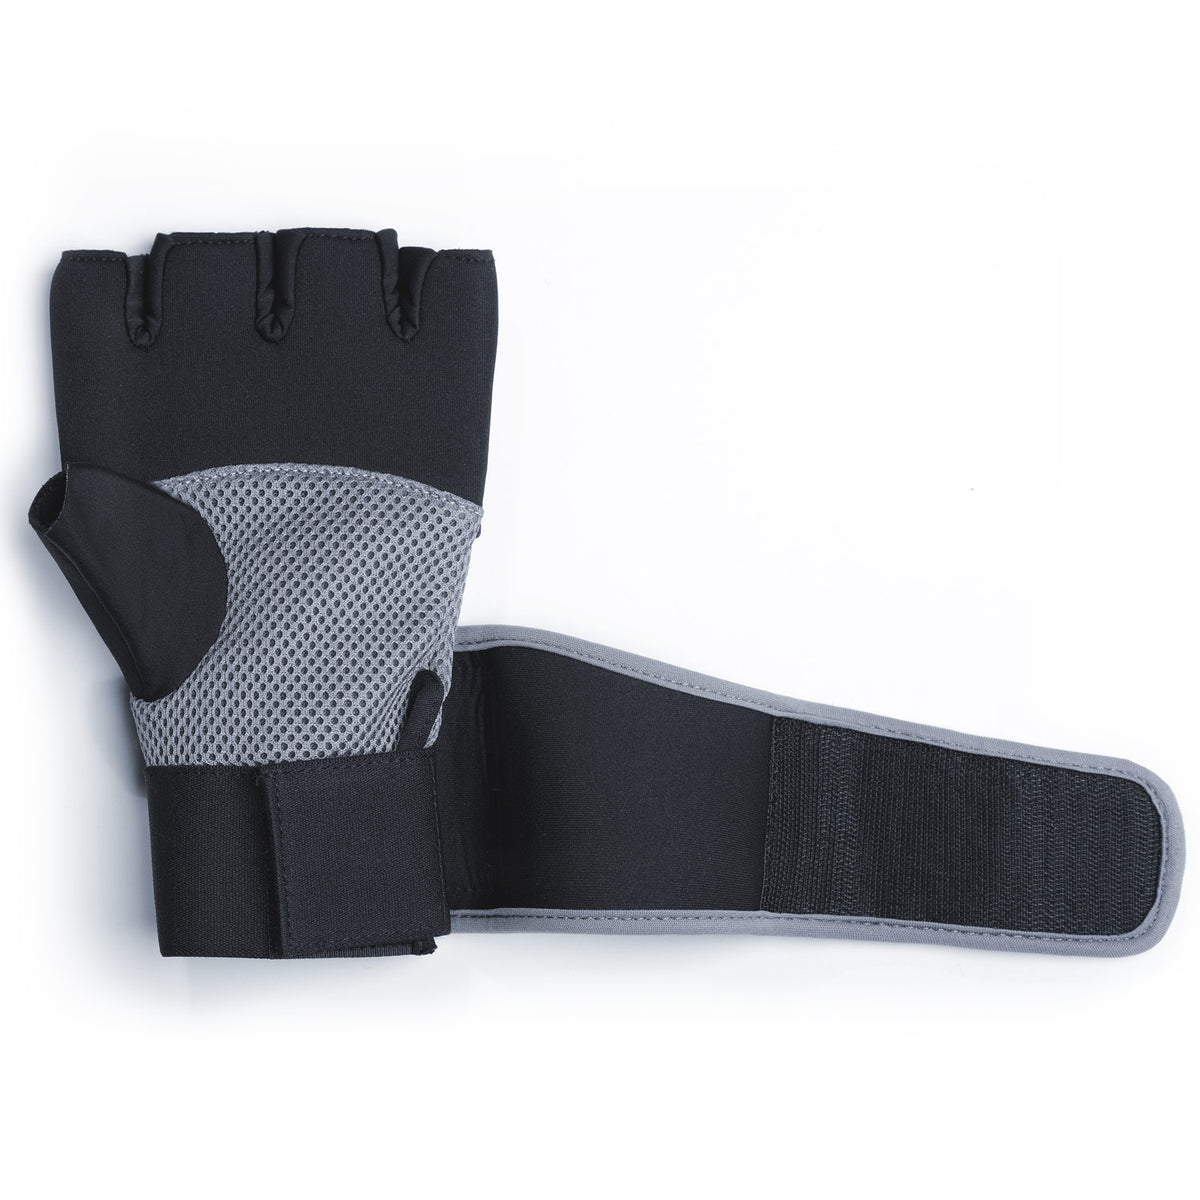 Die Phantom Gel Neopren Handschuhe für dein Kampfsporttraining. Produziert aus hochwertigem Neopren und Silikon. SIe verfügen über eine lange Handgelenksbandage für optimalen Support.